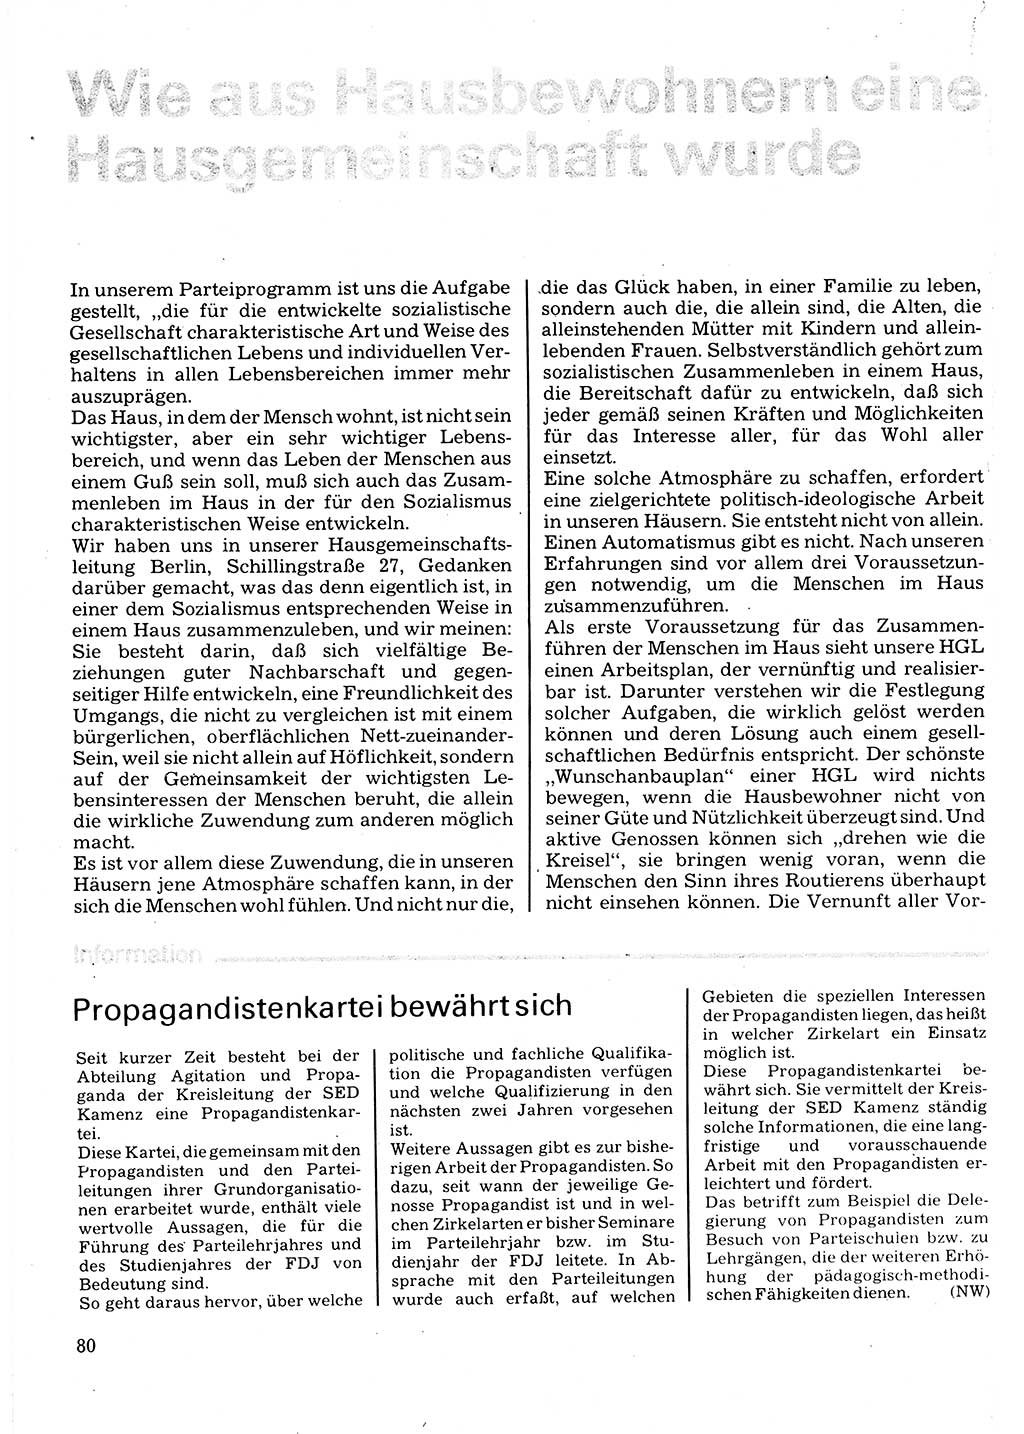 Neuer Weg (NW), Organ des Zentralkomitees (ZK) der SED (Sozialistische Einheitspartei Deutschlands) für Fragen des Parteilebens, 32. Jahrgang [Deutsche Demokratische Republik (DDR)] 1977, Seite 80 (NW ZK SED DDR 1977, S. 80)